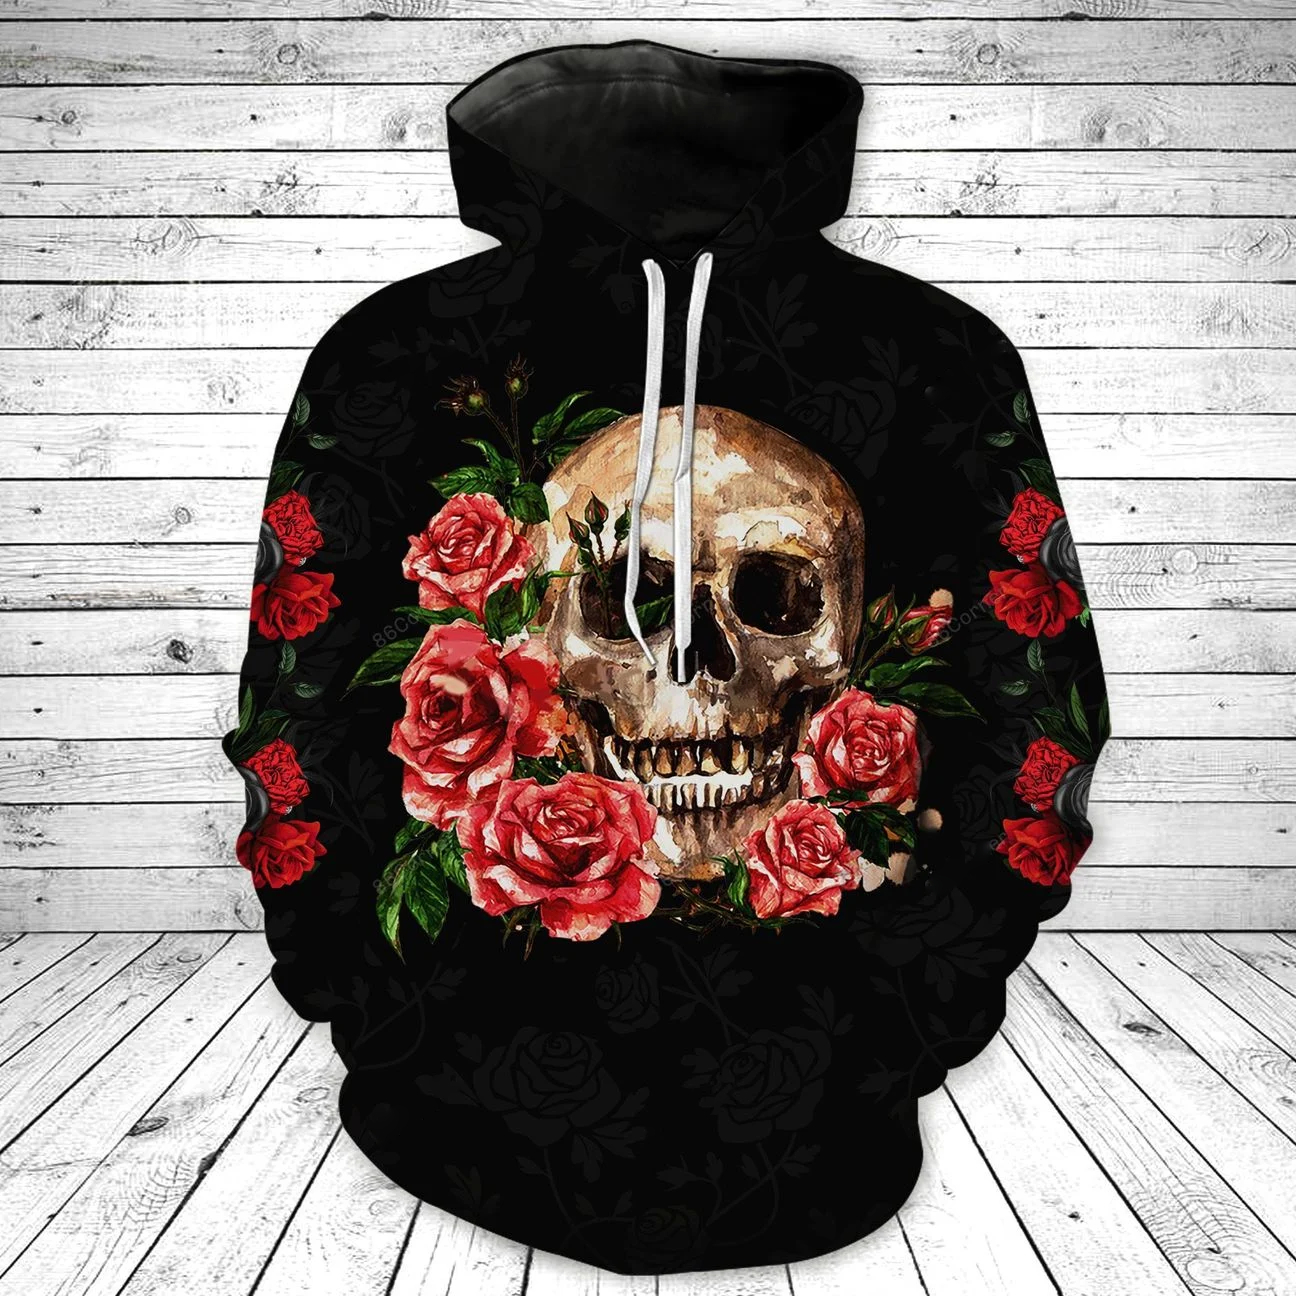 Skull Hoodies Novelty Skull Graphics T-Shirt Sweatshirt V09 - Vascara